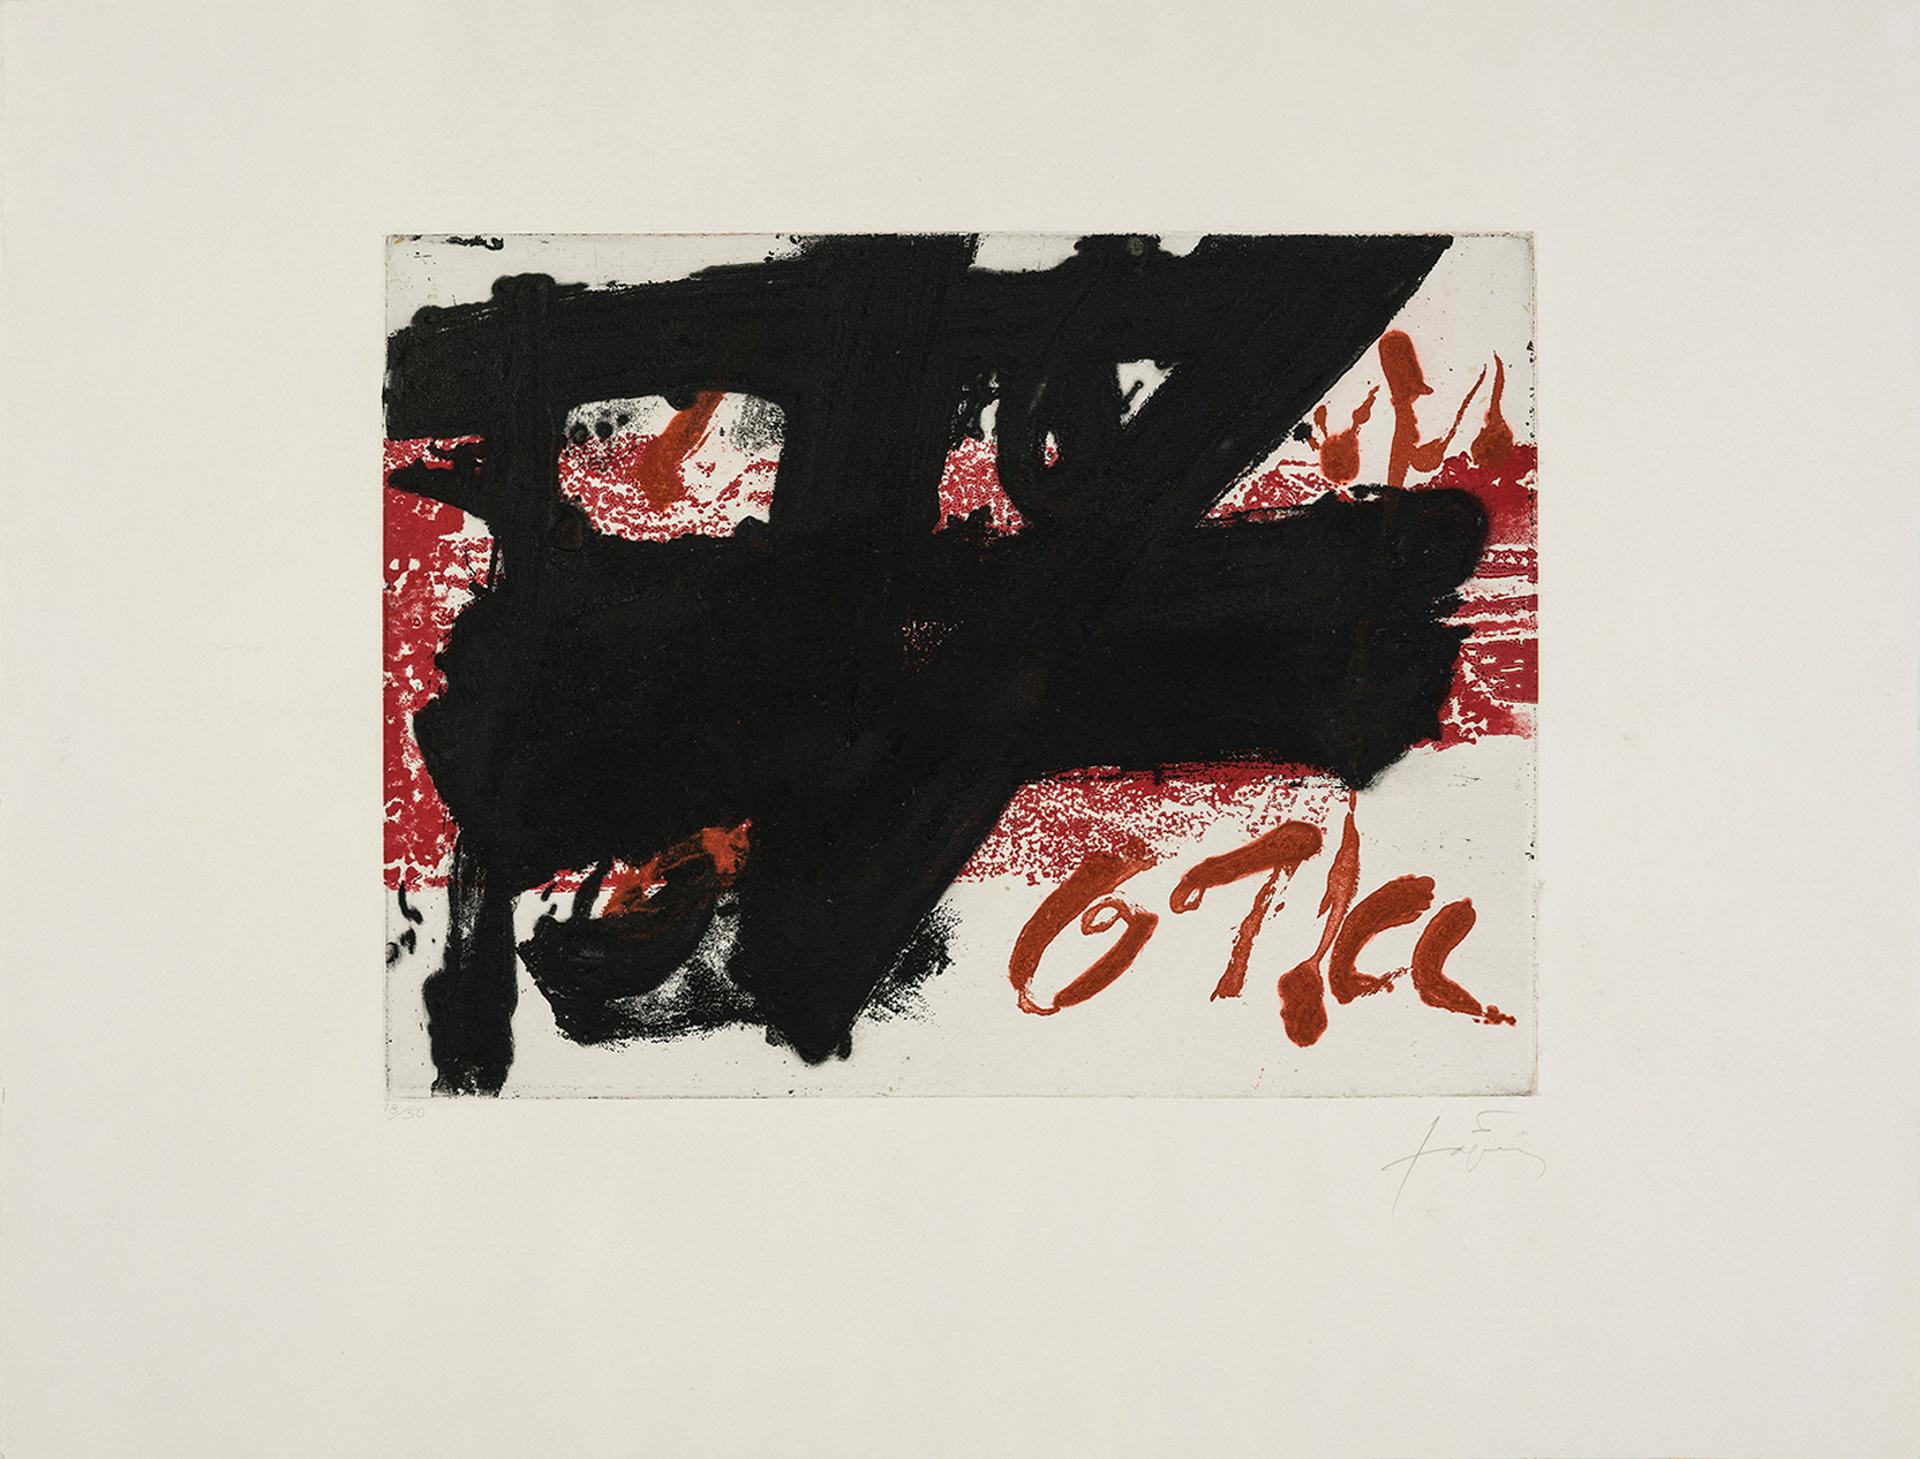 Antoni Tàpies (1923-2012) - Noir sur rouge, 1983